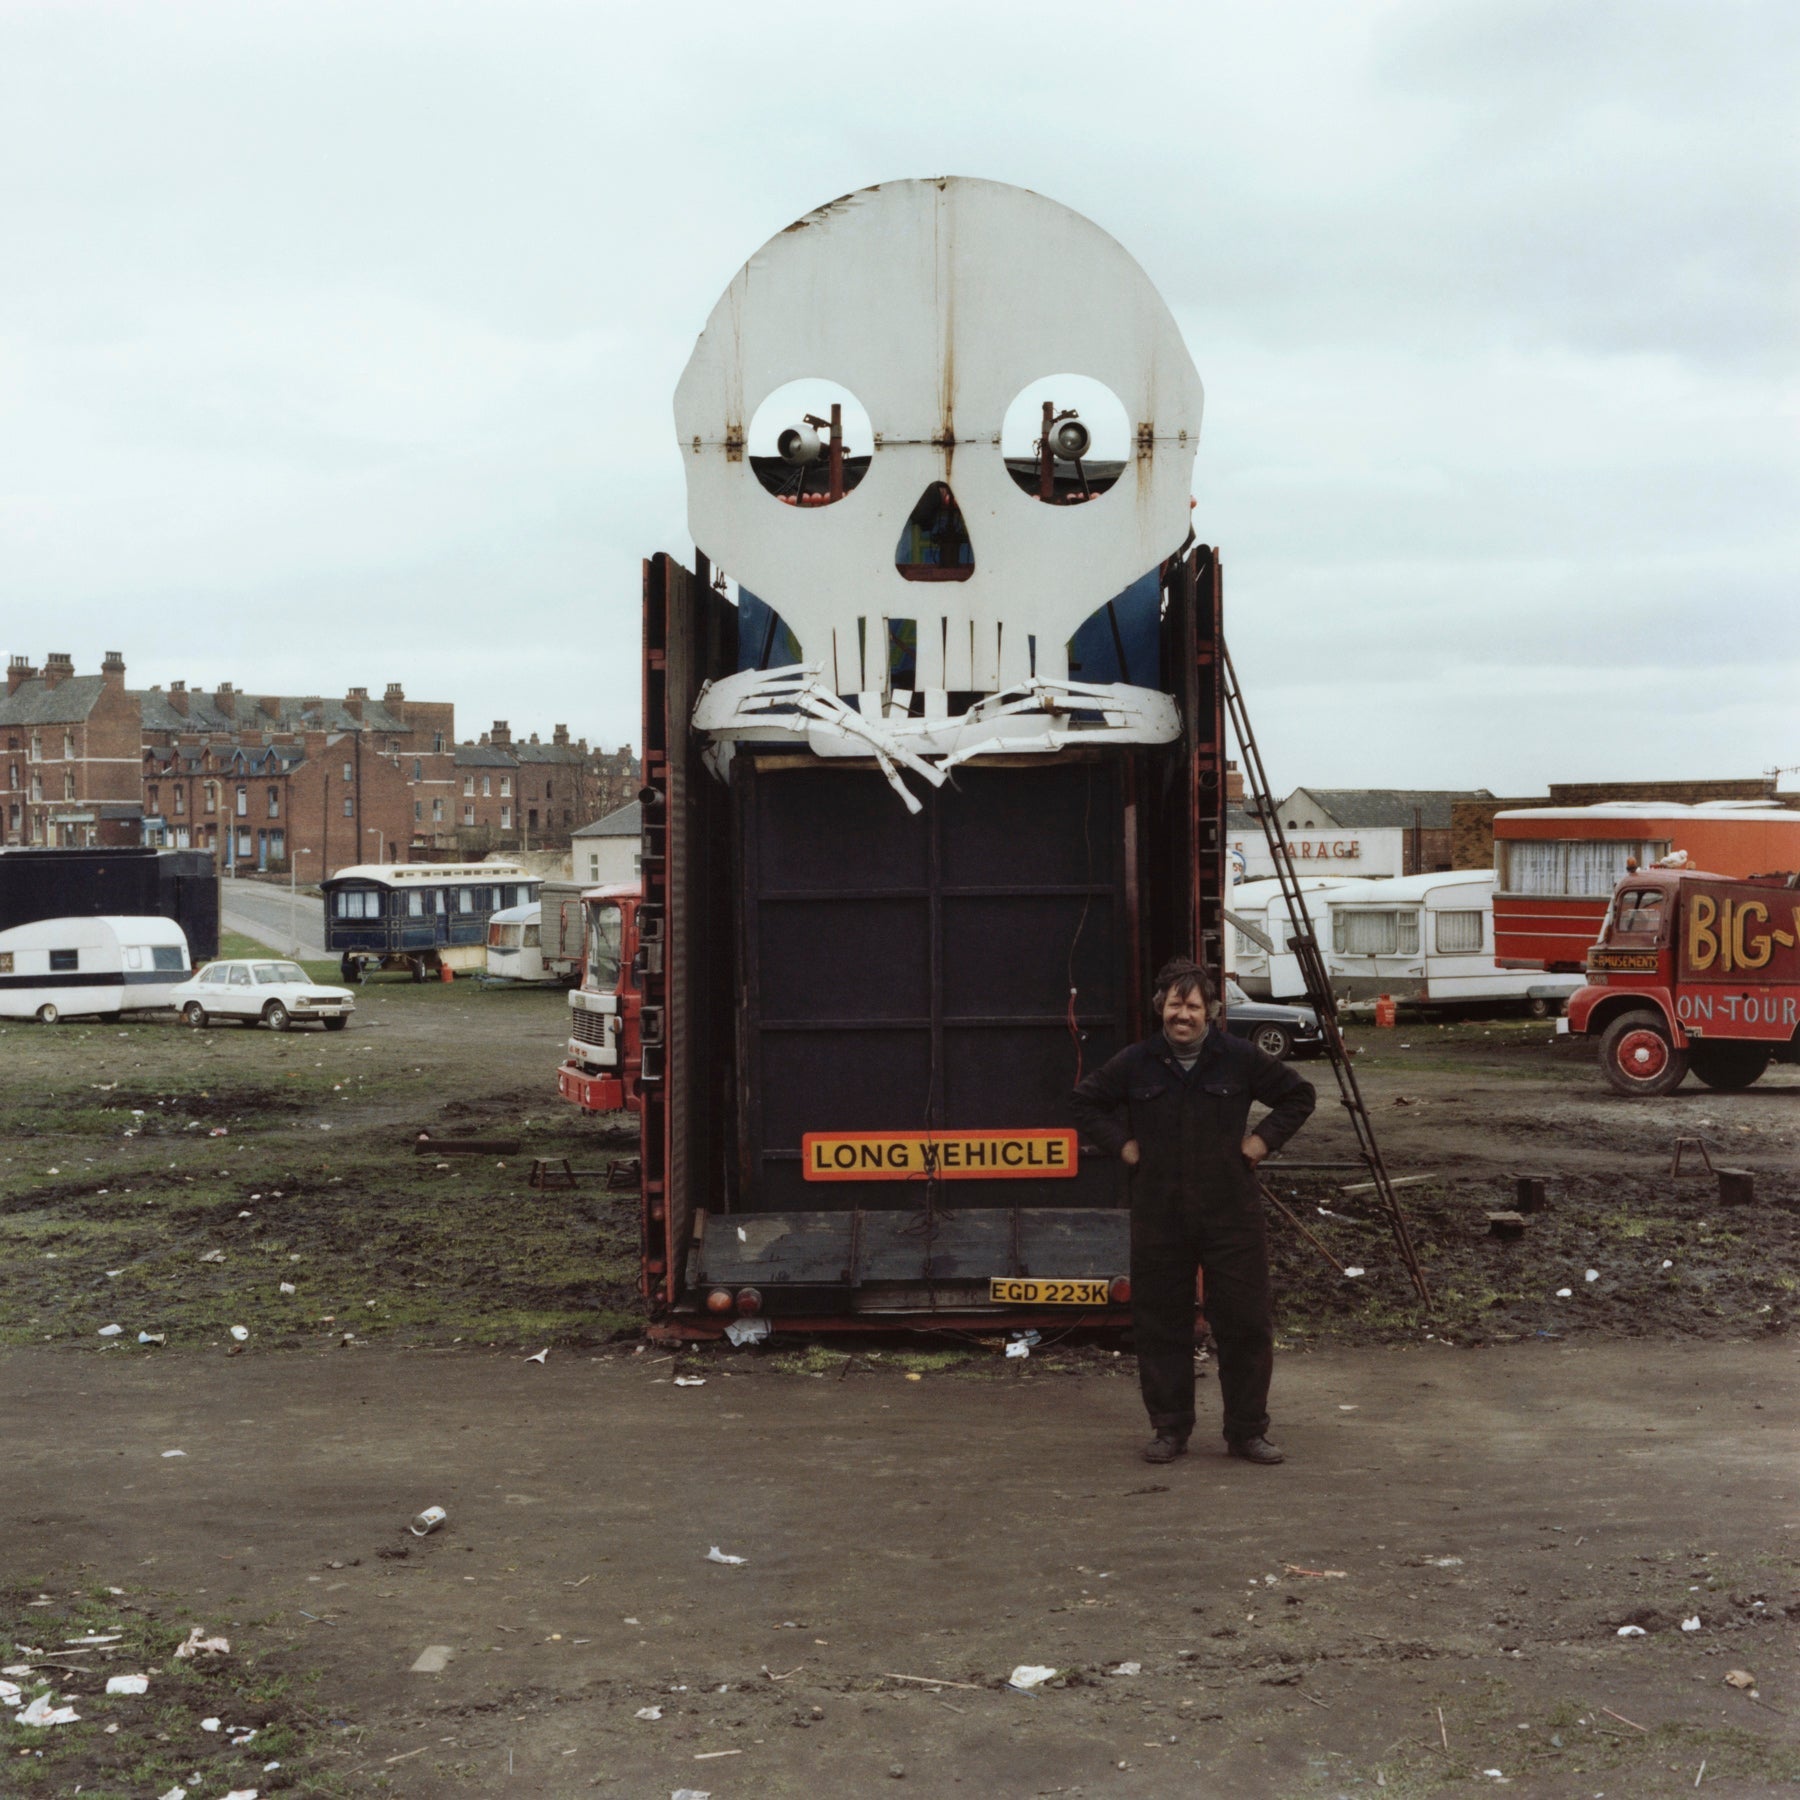 Francis Gavan, Ghost Train Man, Woodhouse Moor, Leeds, 1977 - 7x9" Print